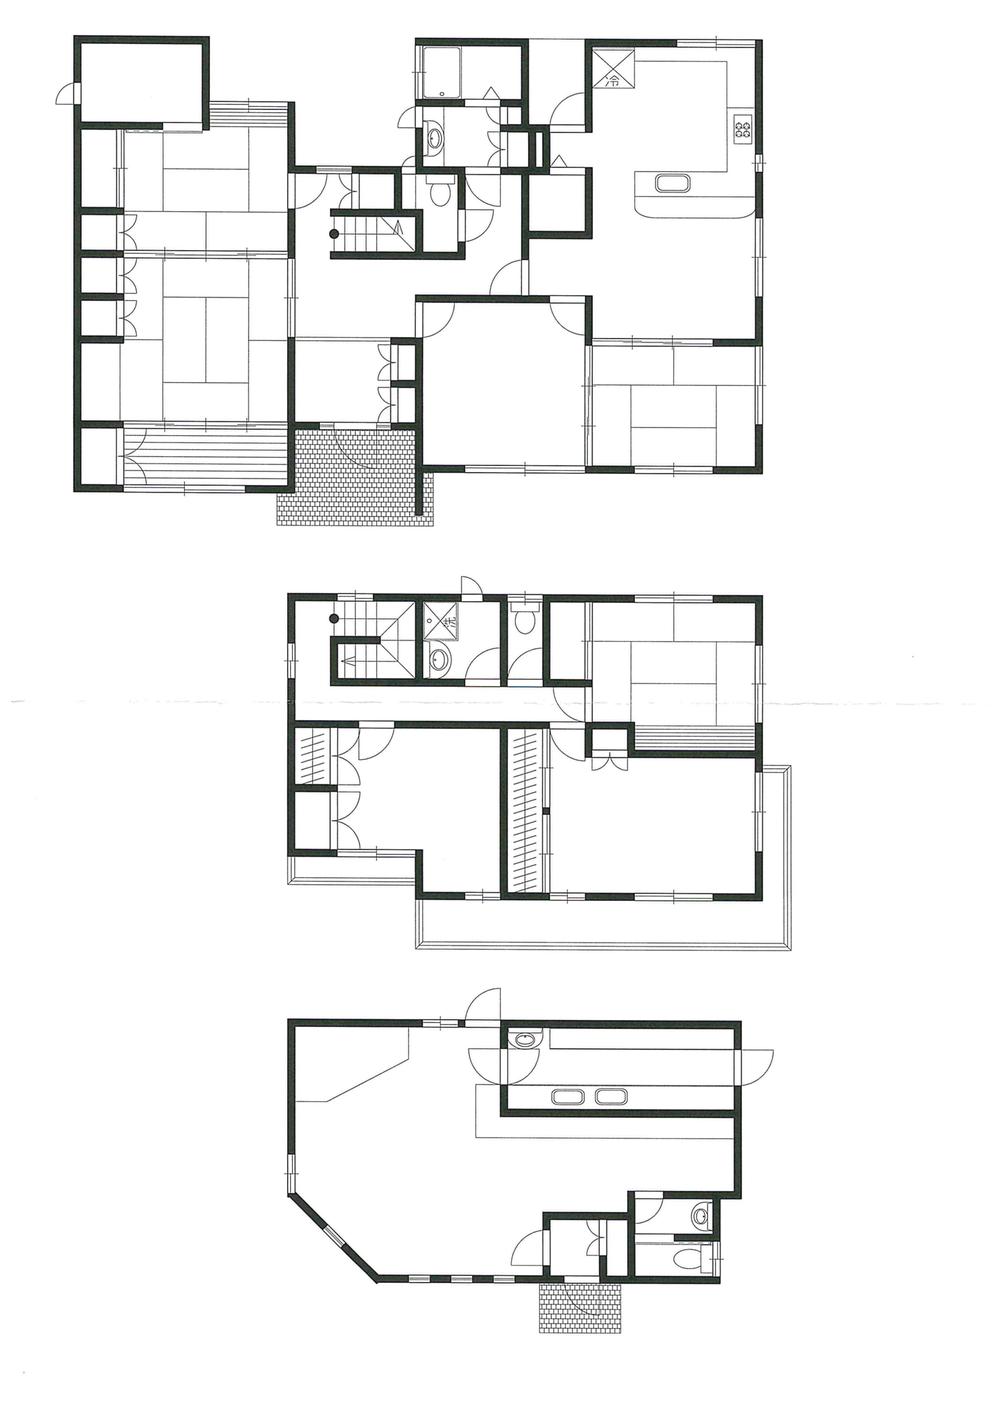 Floor plan. 19,800,000 yen, 7LDK + 2S (storeroom), Land area 401.23 sq m , Building area 186.44 sq m indoor (July 2013) Shooting